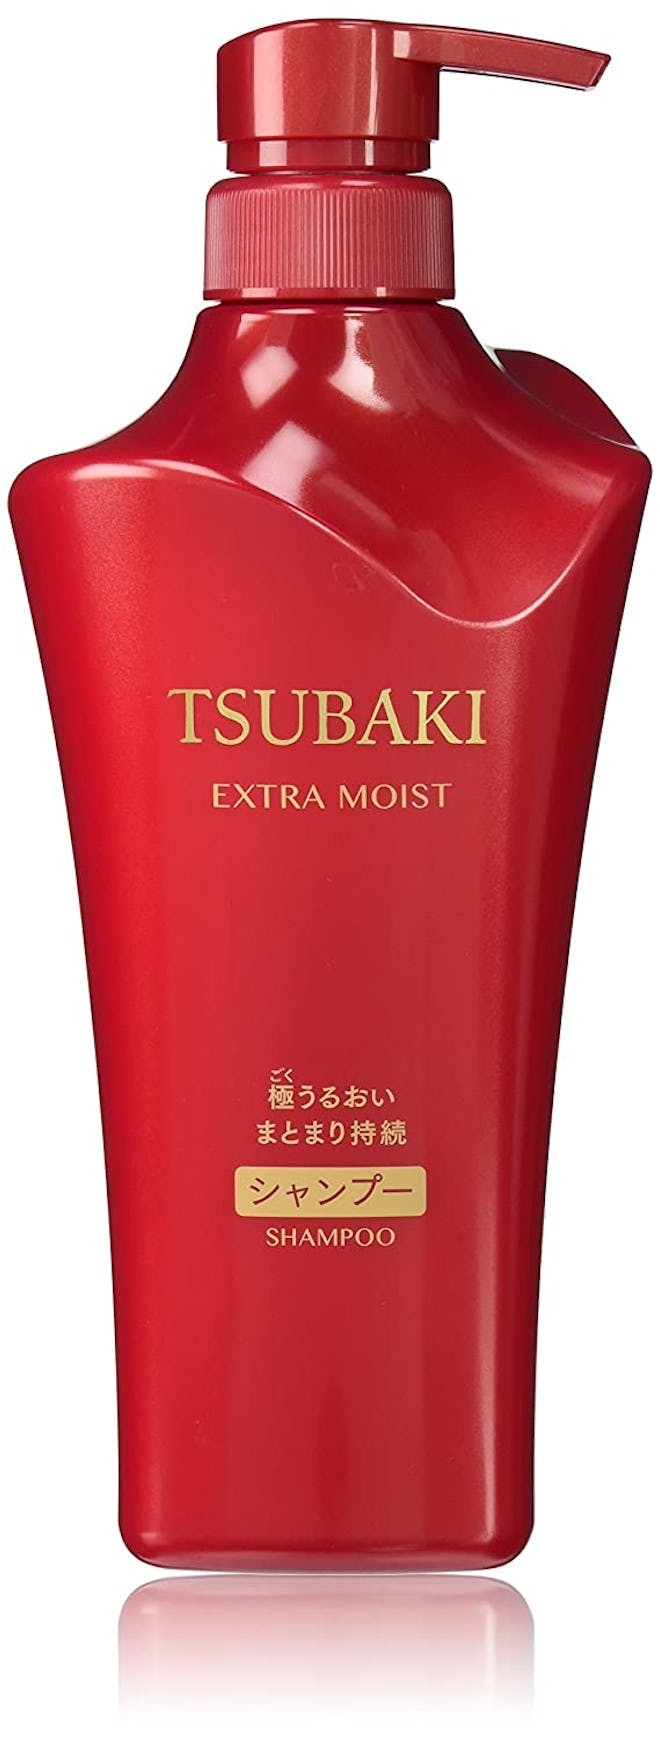  Tsubaki Extra Moist Shampoo